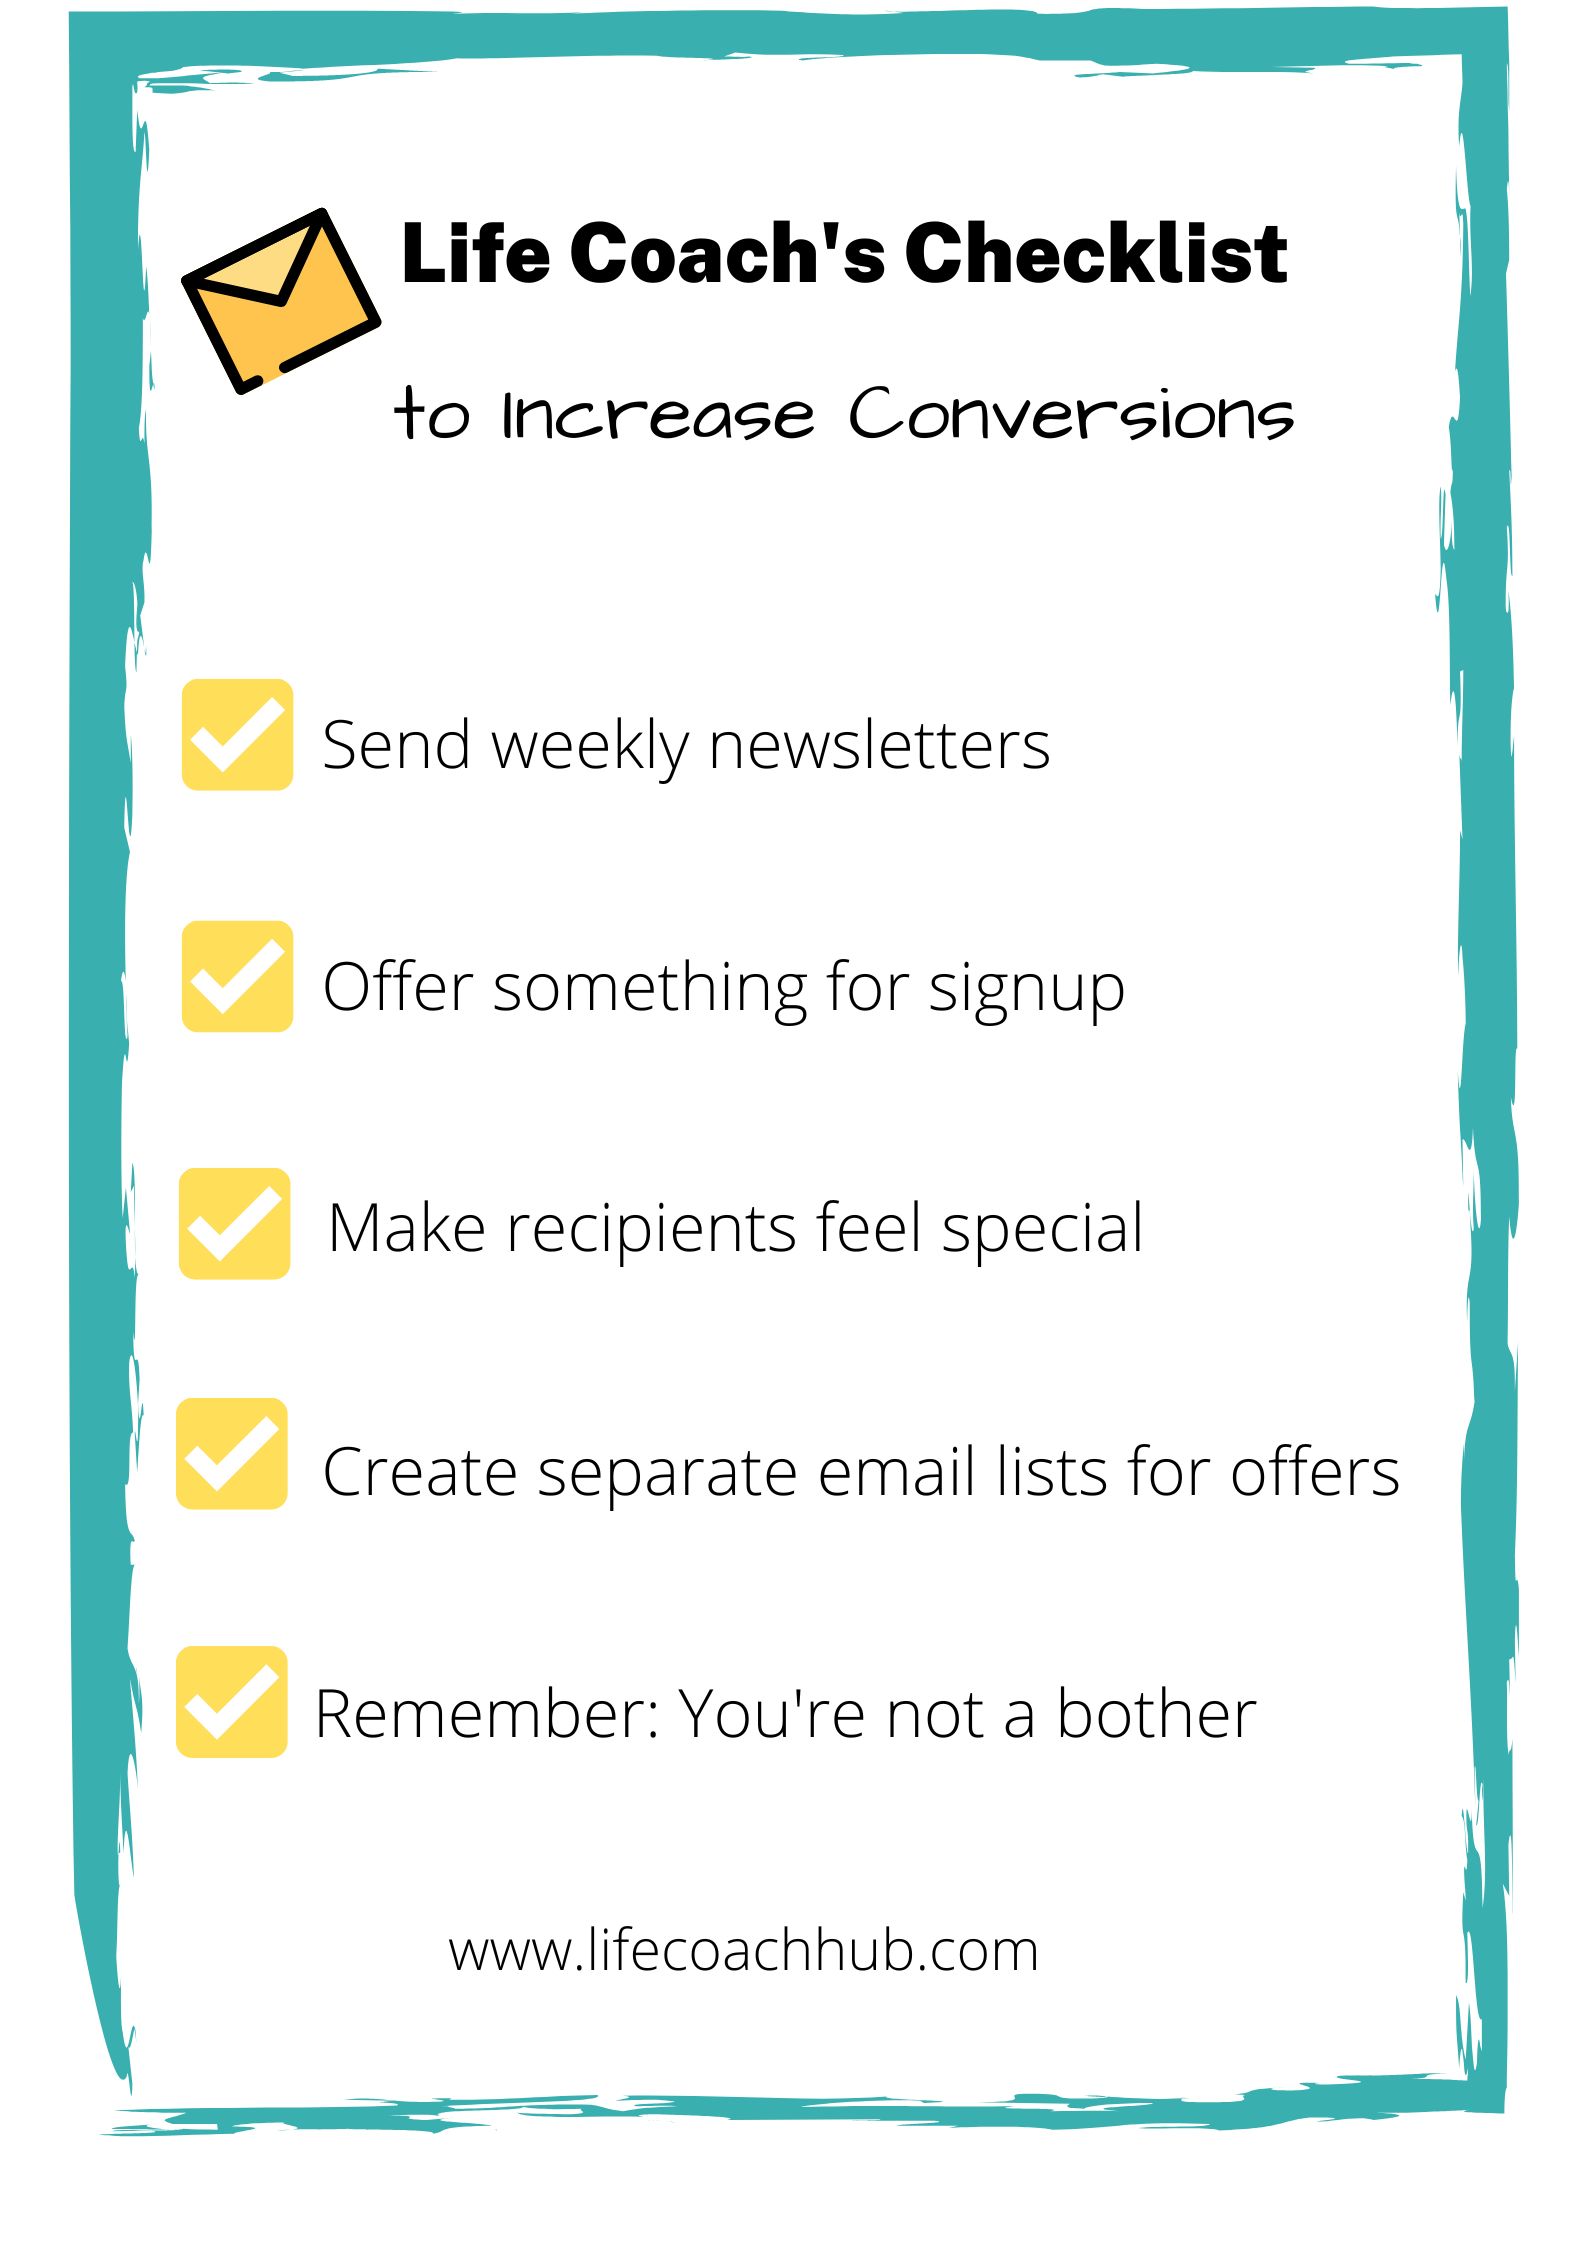 Checklist to increase conversions